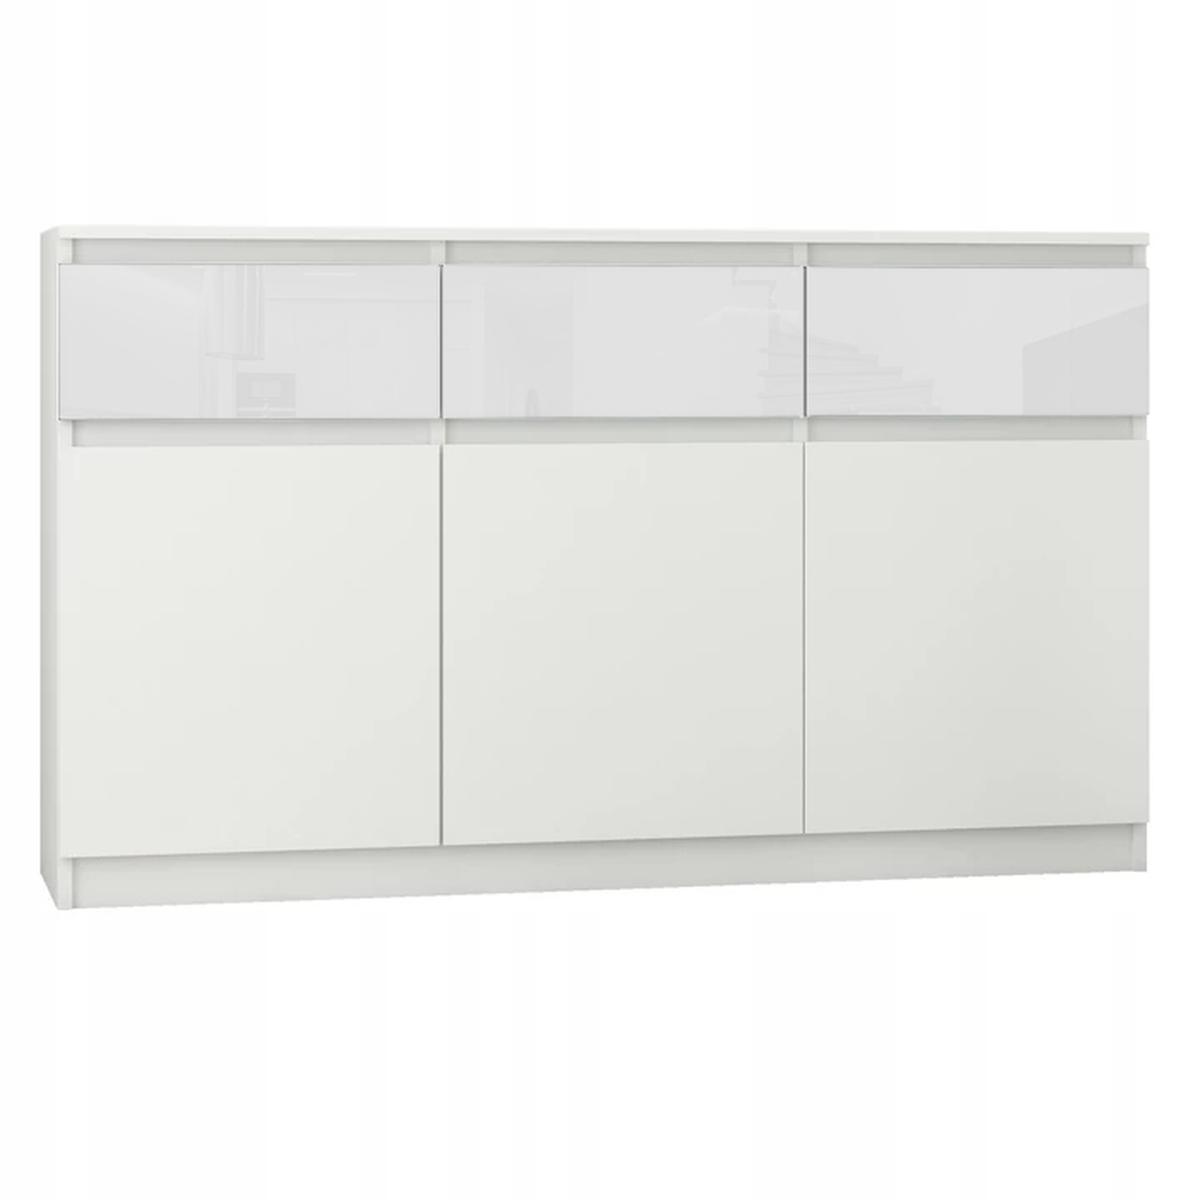 Komoda MODERN 120x40 cm biała tekstura z szafkami zabudowanymi do sypialni salonu  0 Full Screen